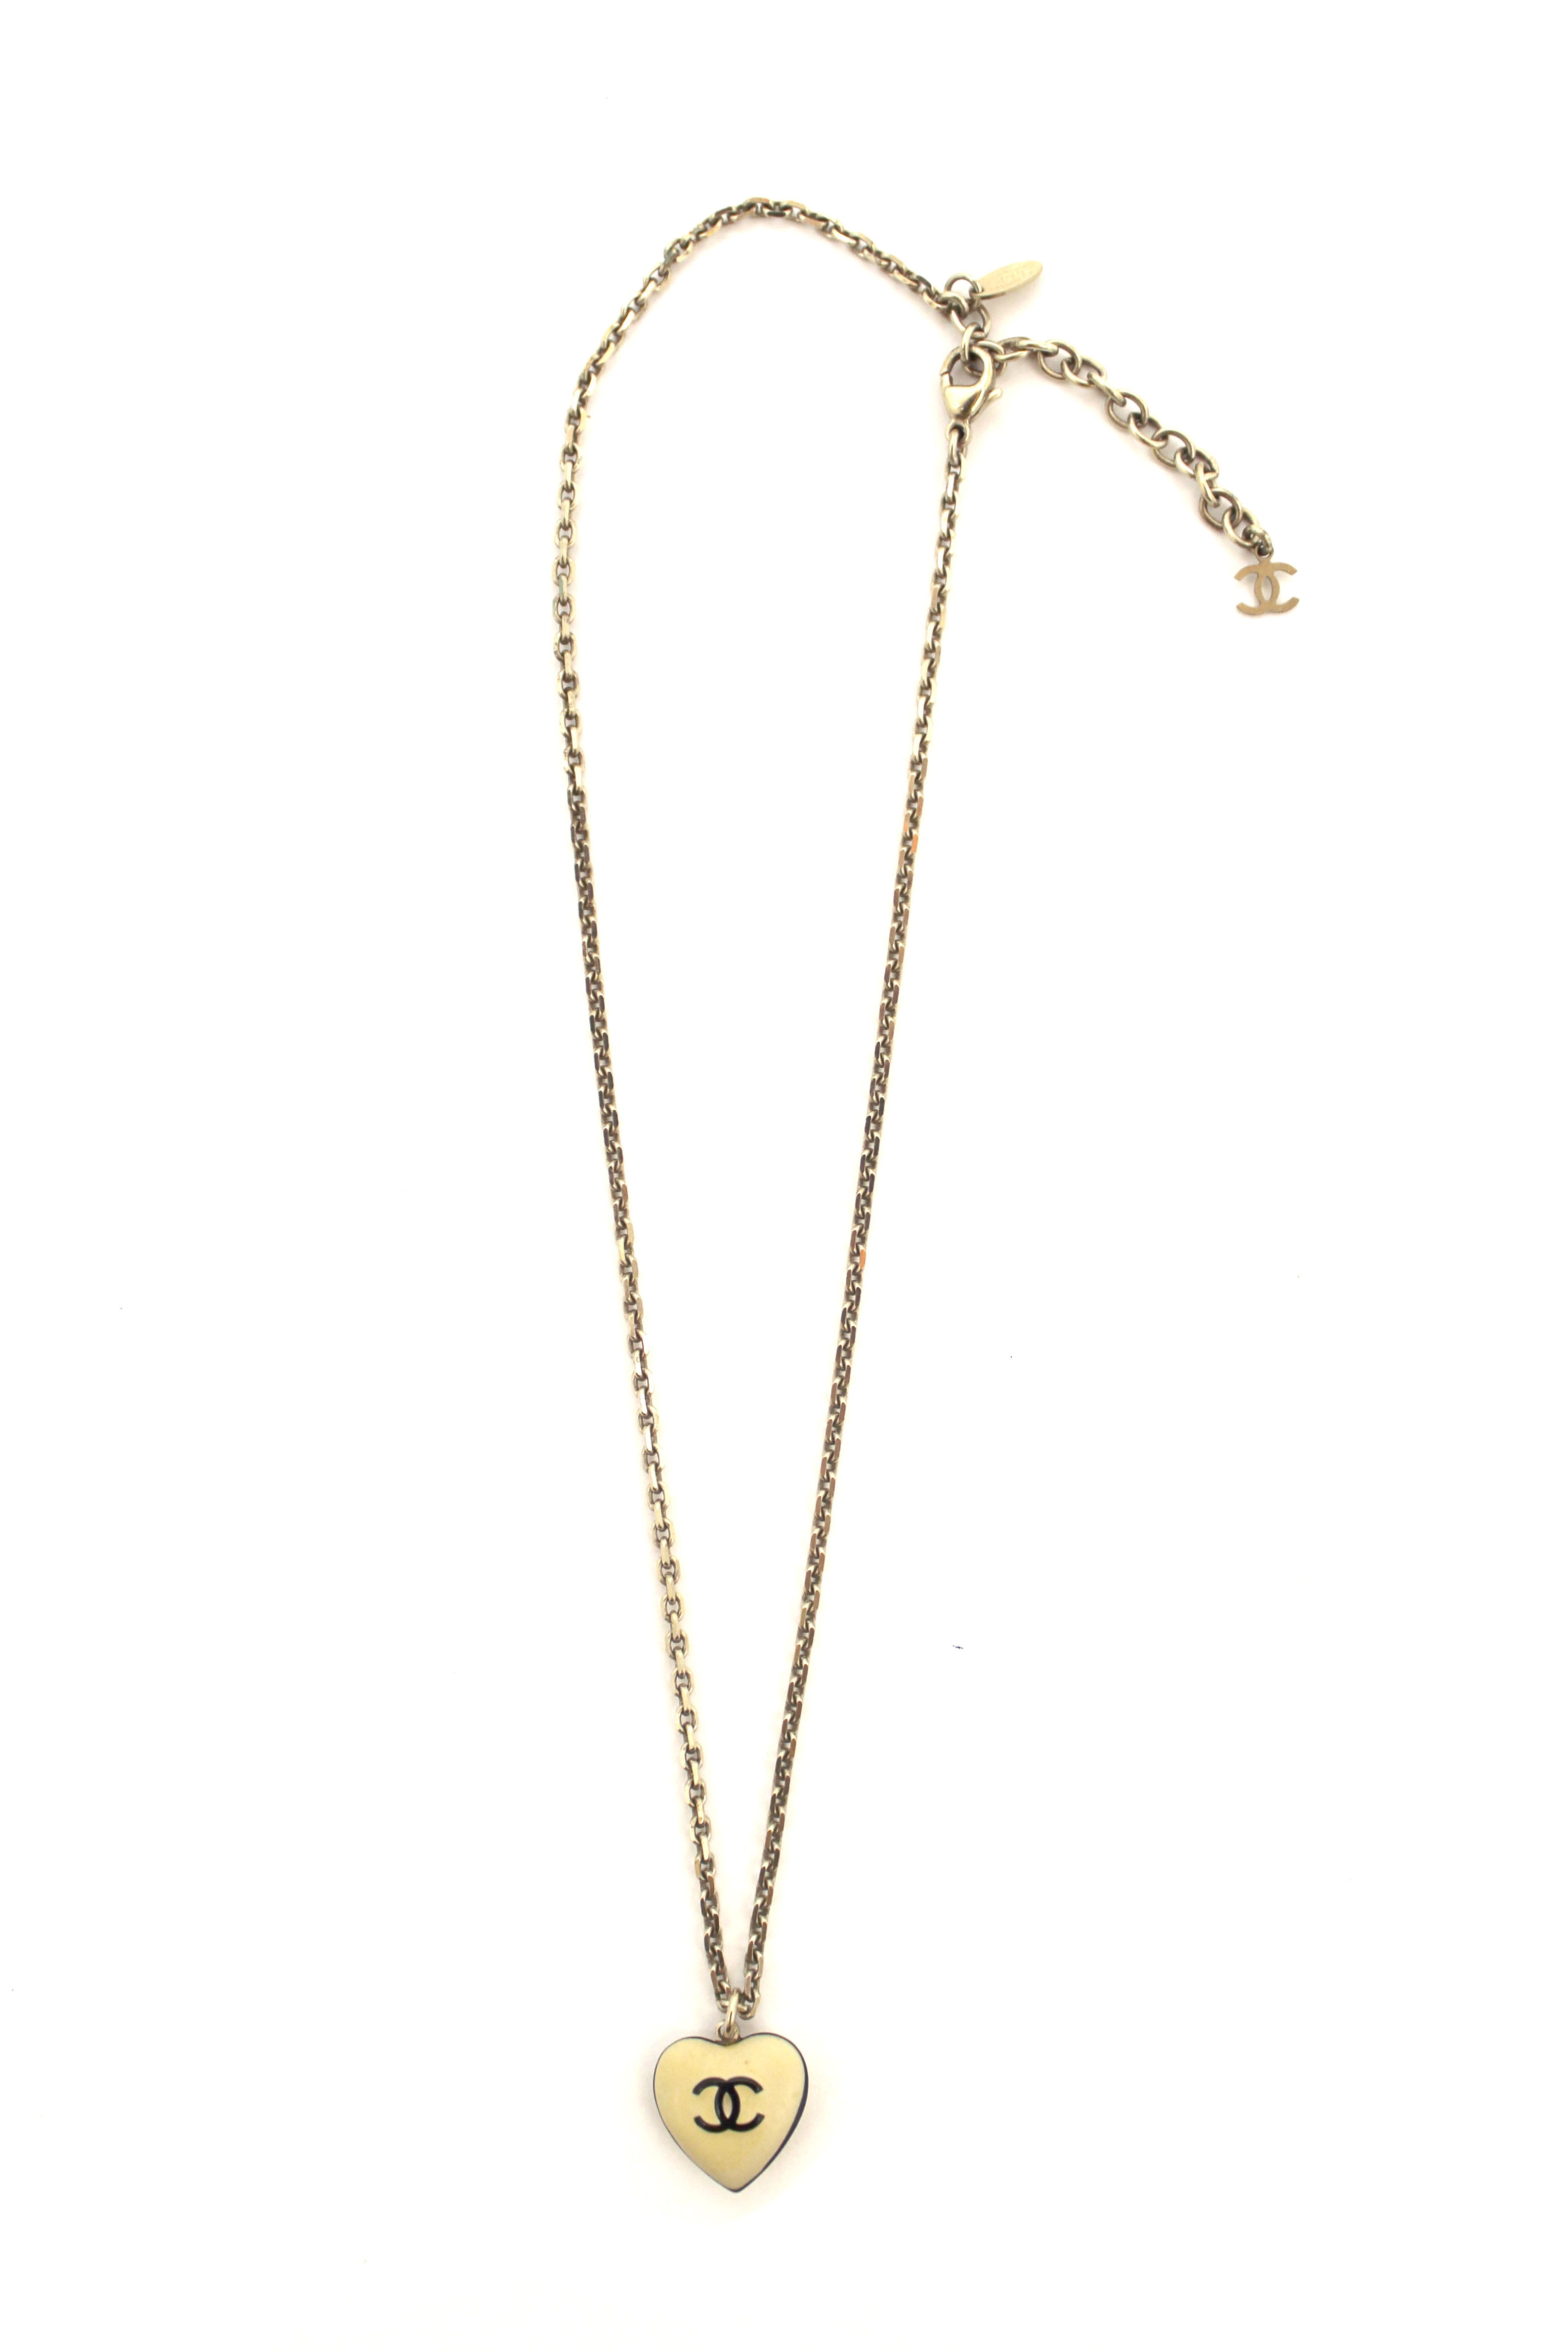 Authentic Chanel Vintage Beige Enamel Mini Heart Pendant Necklace